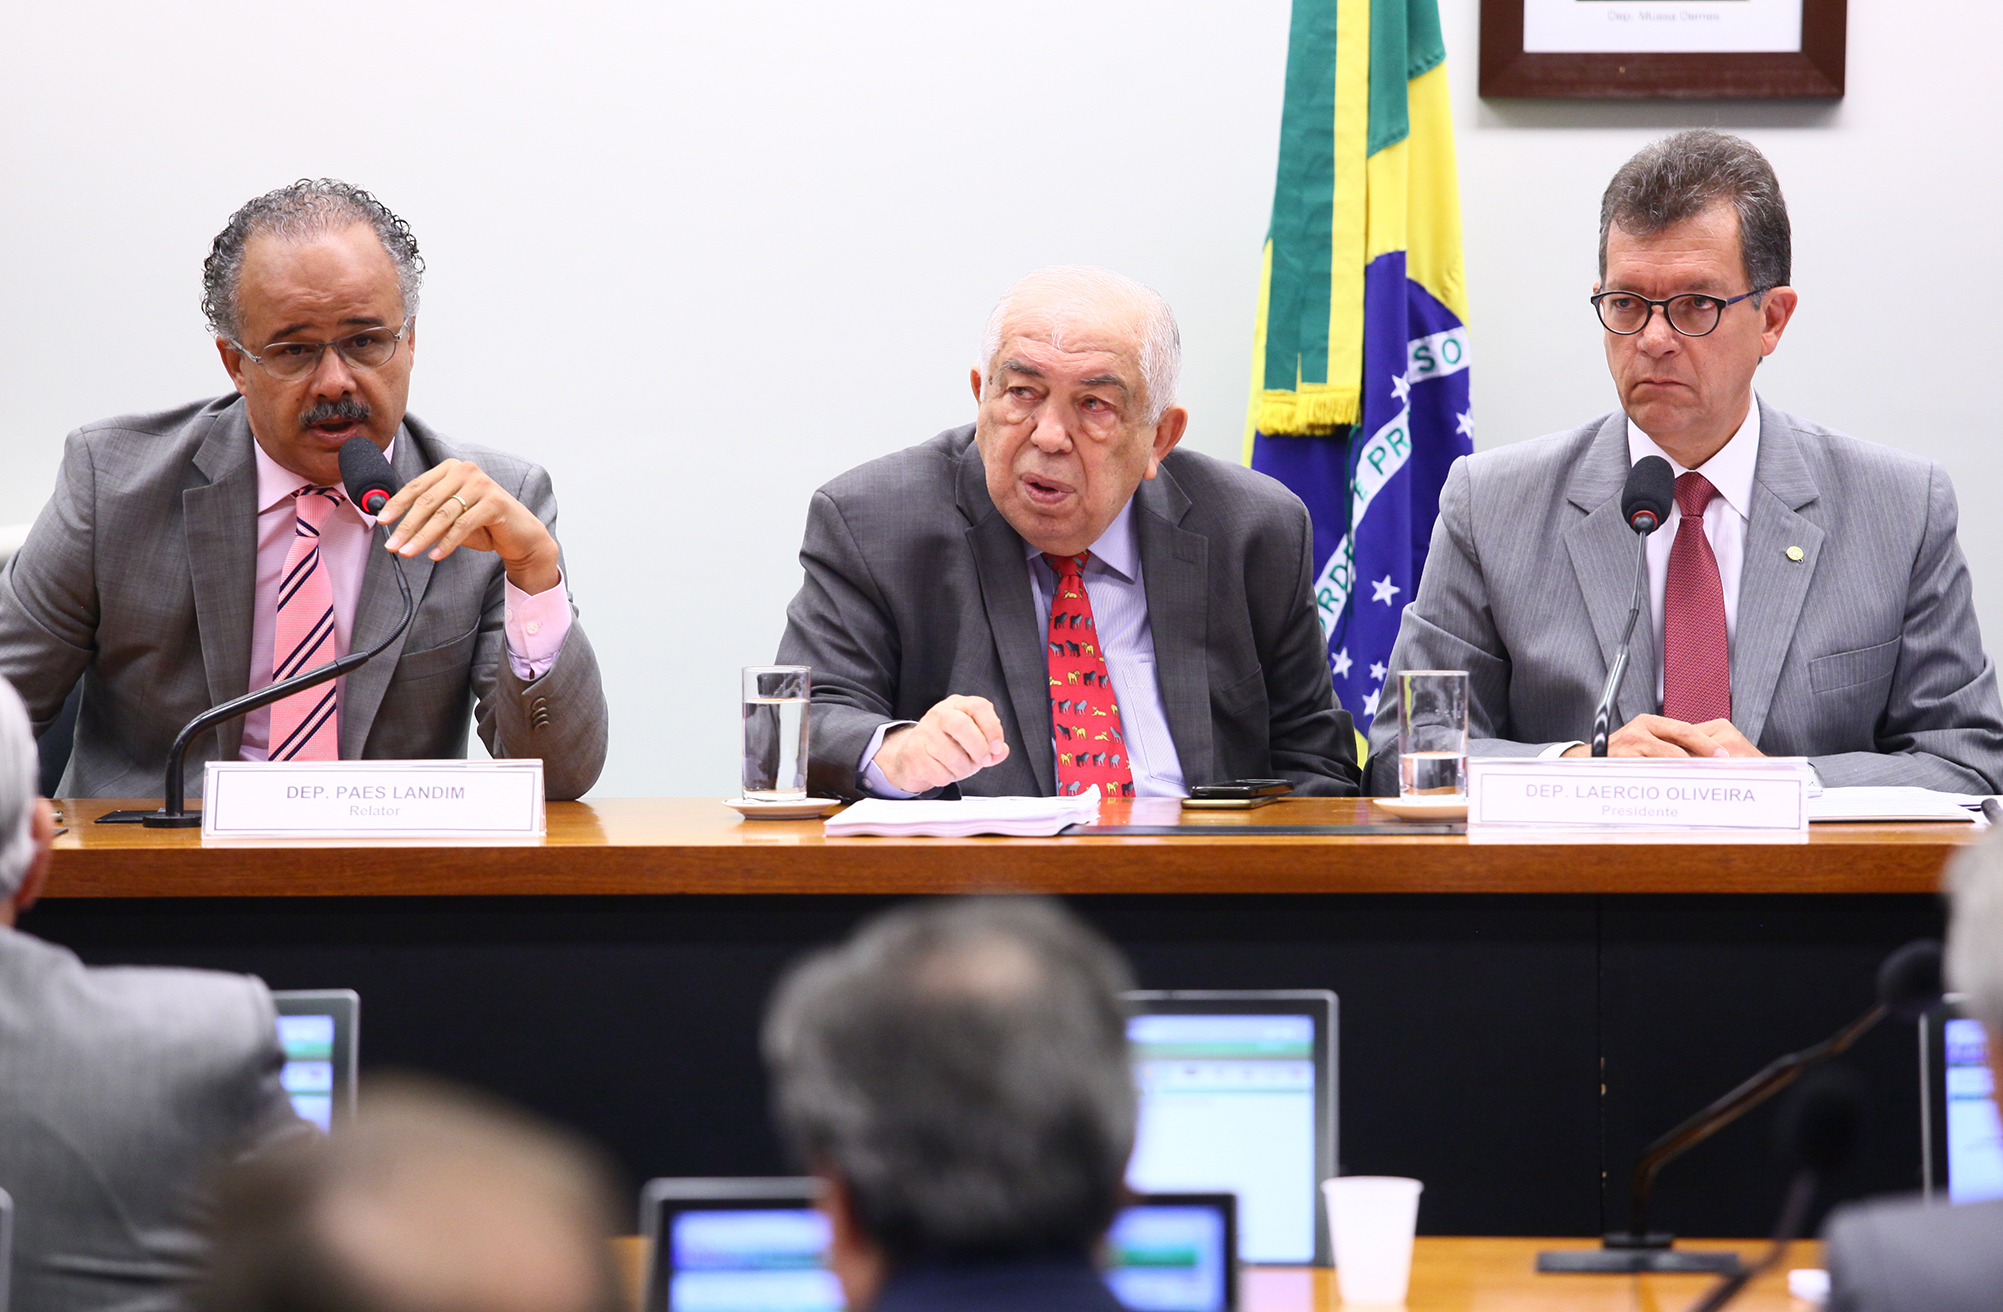 O autor da proposta, Vicente Cândido, o relator, Paes Landim, e o presidente da comissão especial, Laercio Oliveira, esperam votar a proposta nesta terça-feira (23)